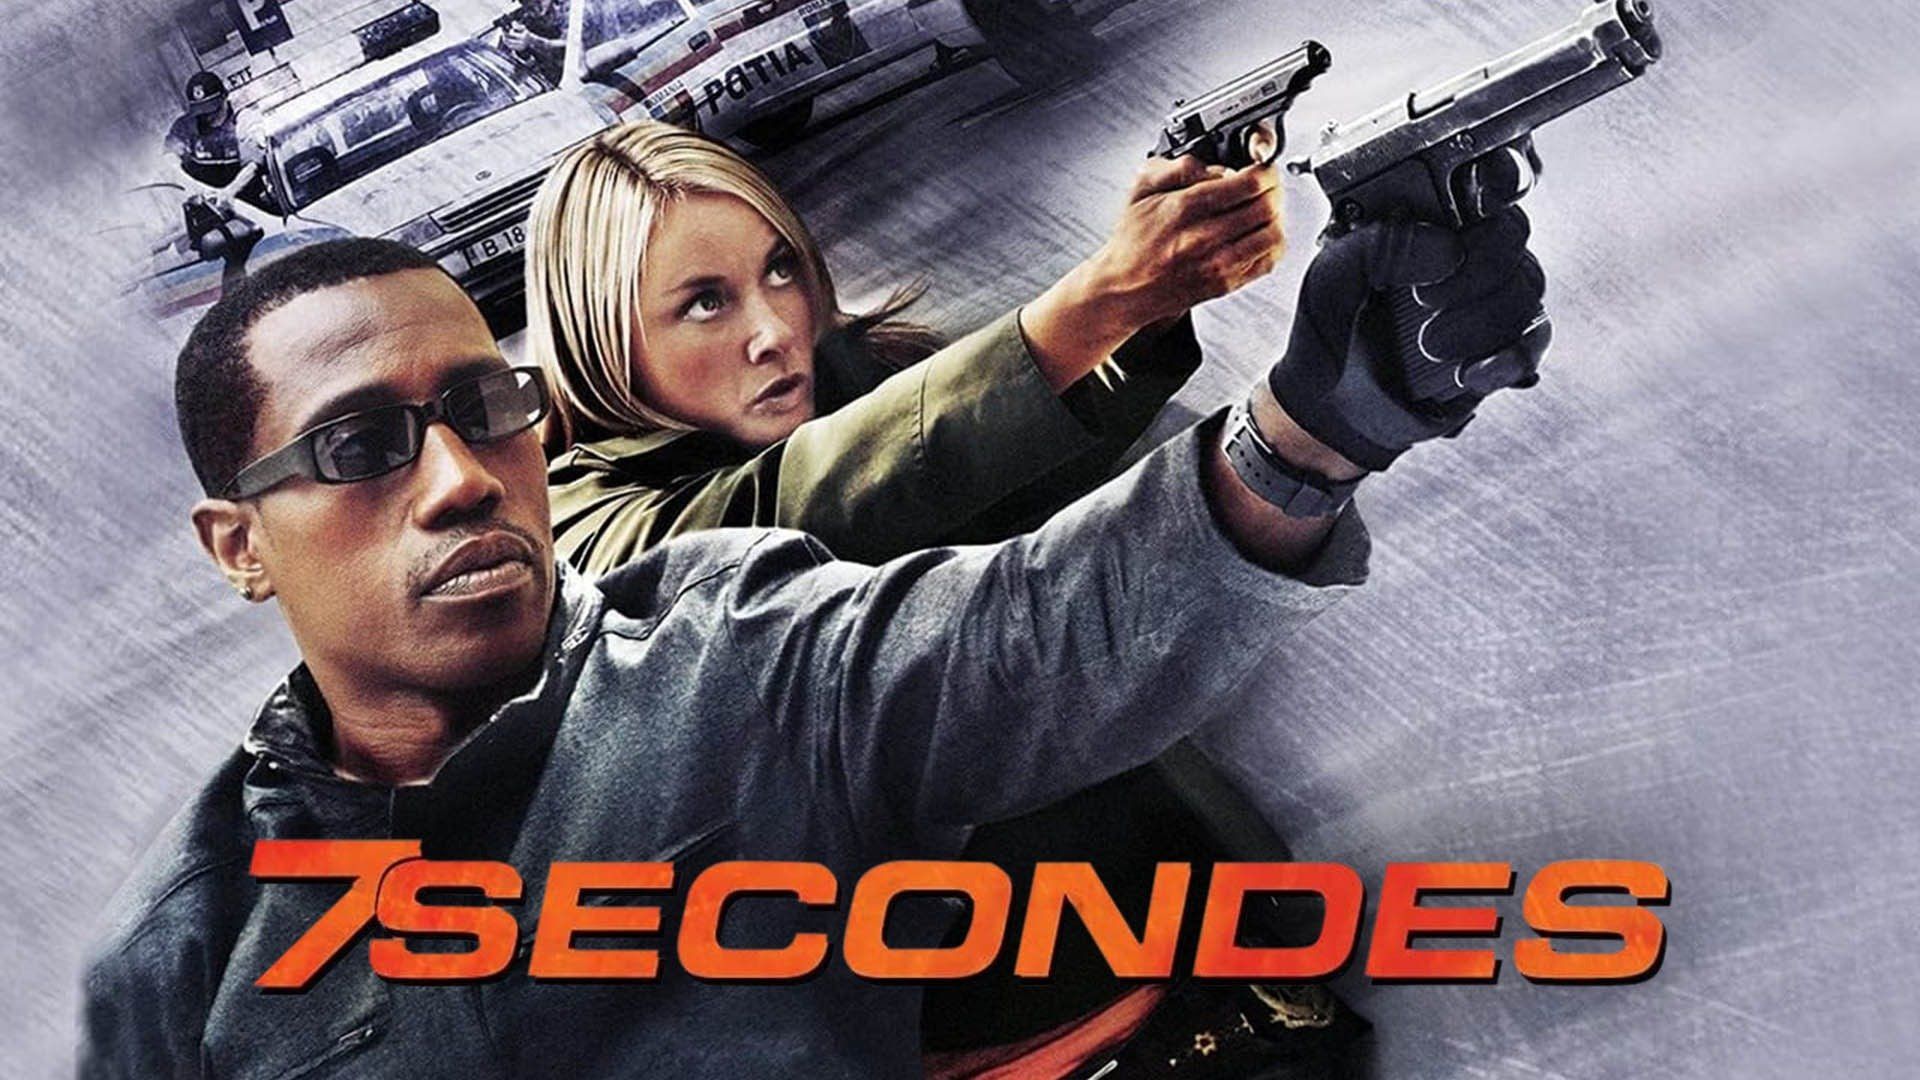 Watch 7 Seconds (2005) Full Movie Online - Plex